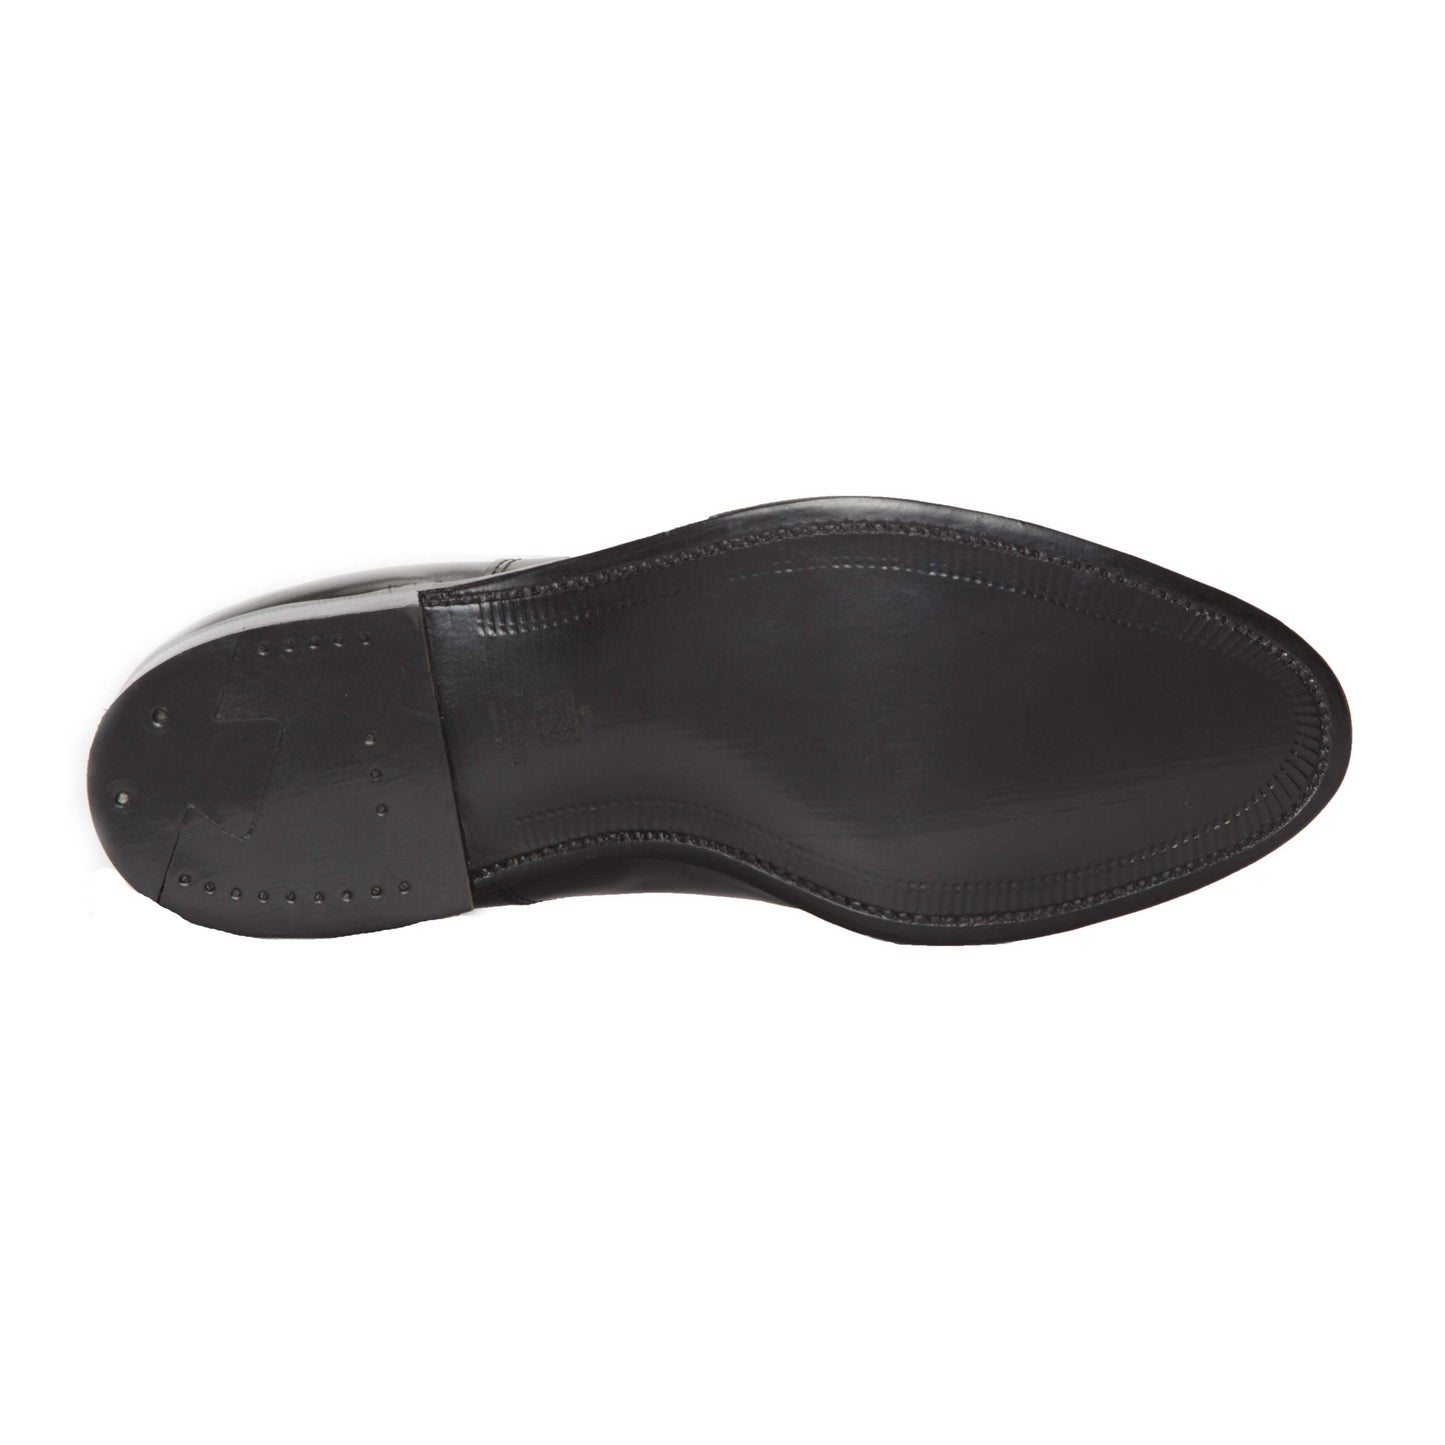 660 - Tassel Loafer in Black Calfksin